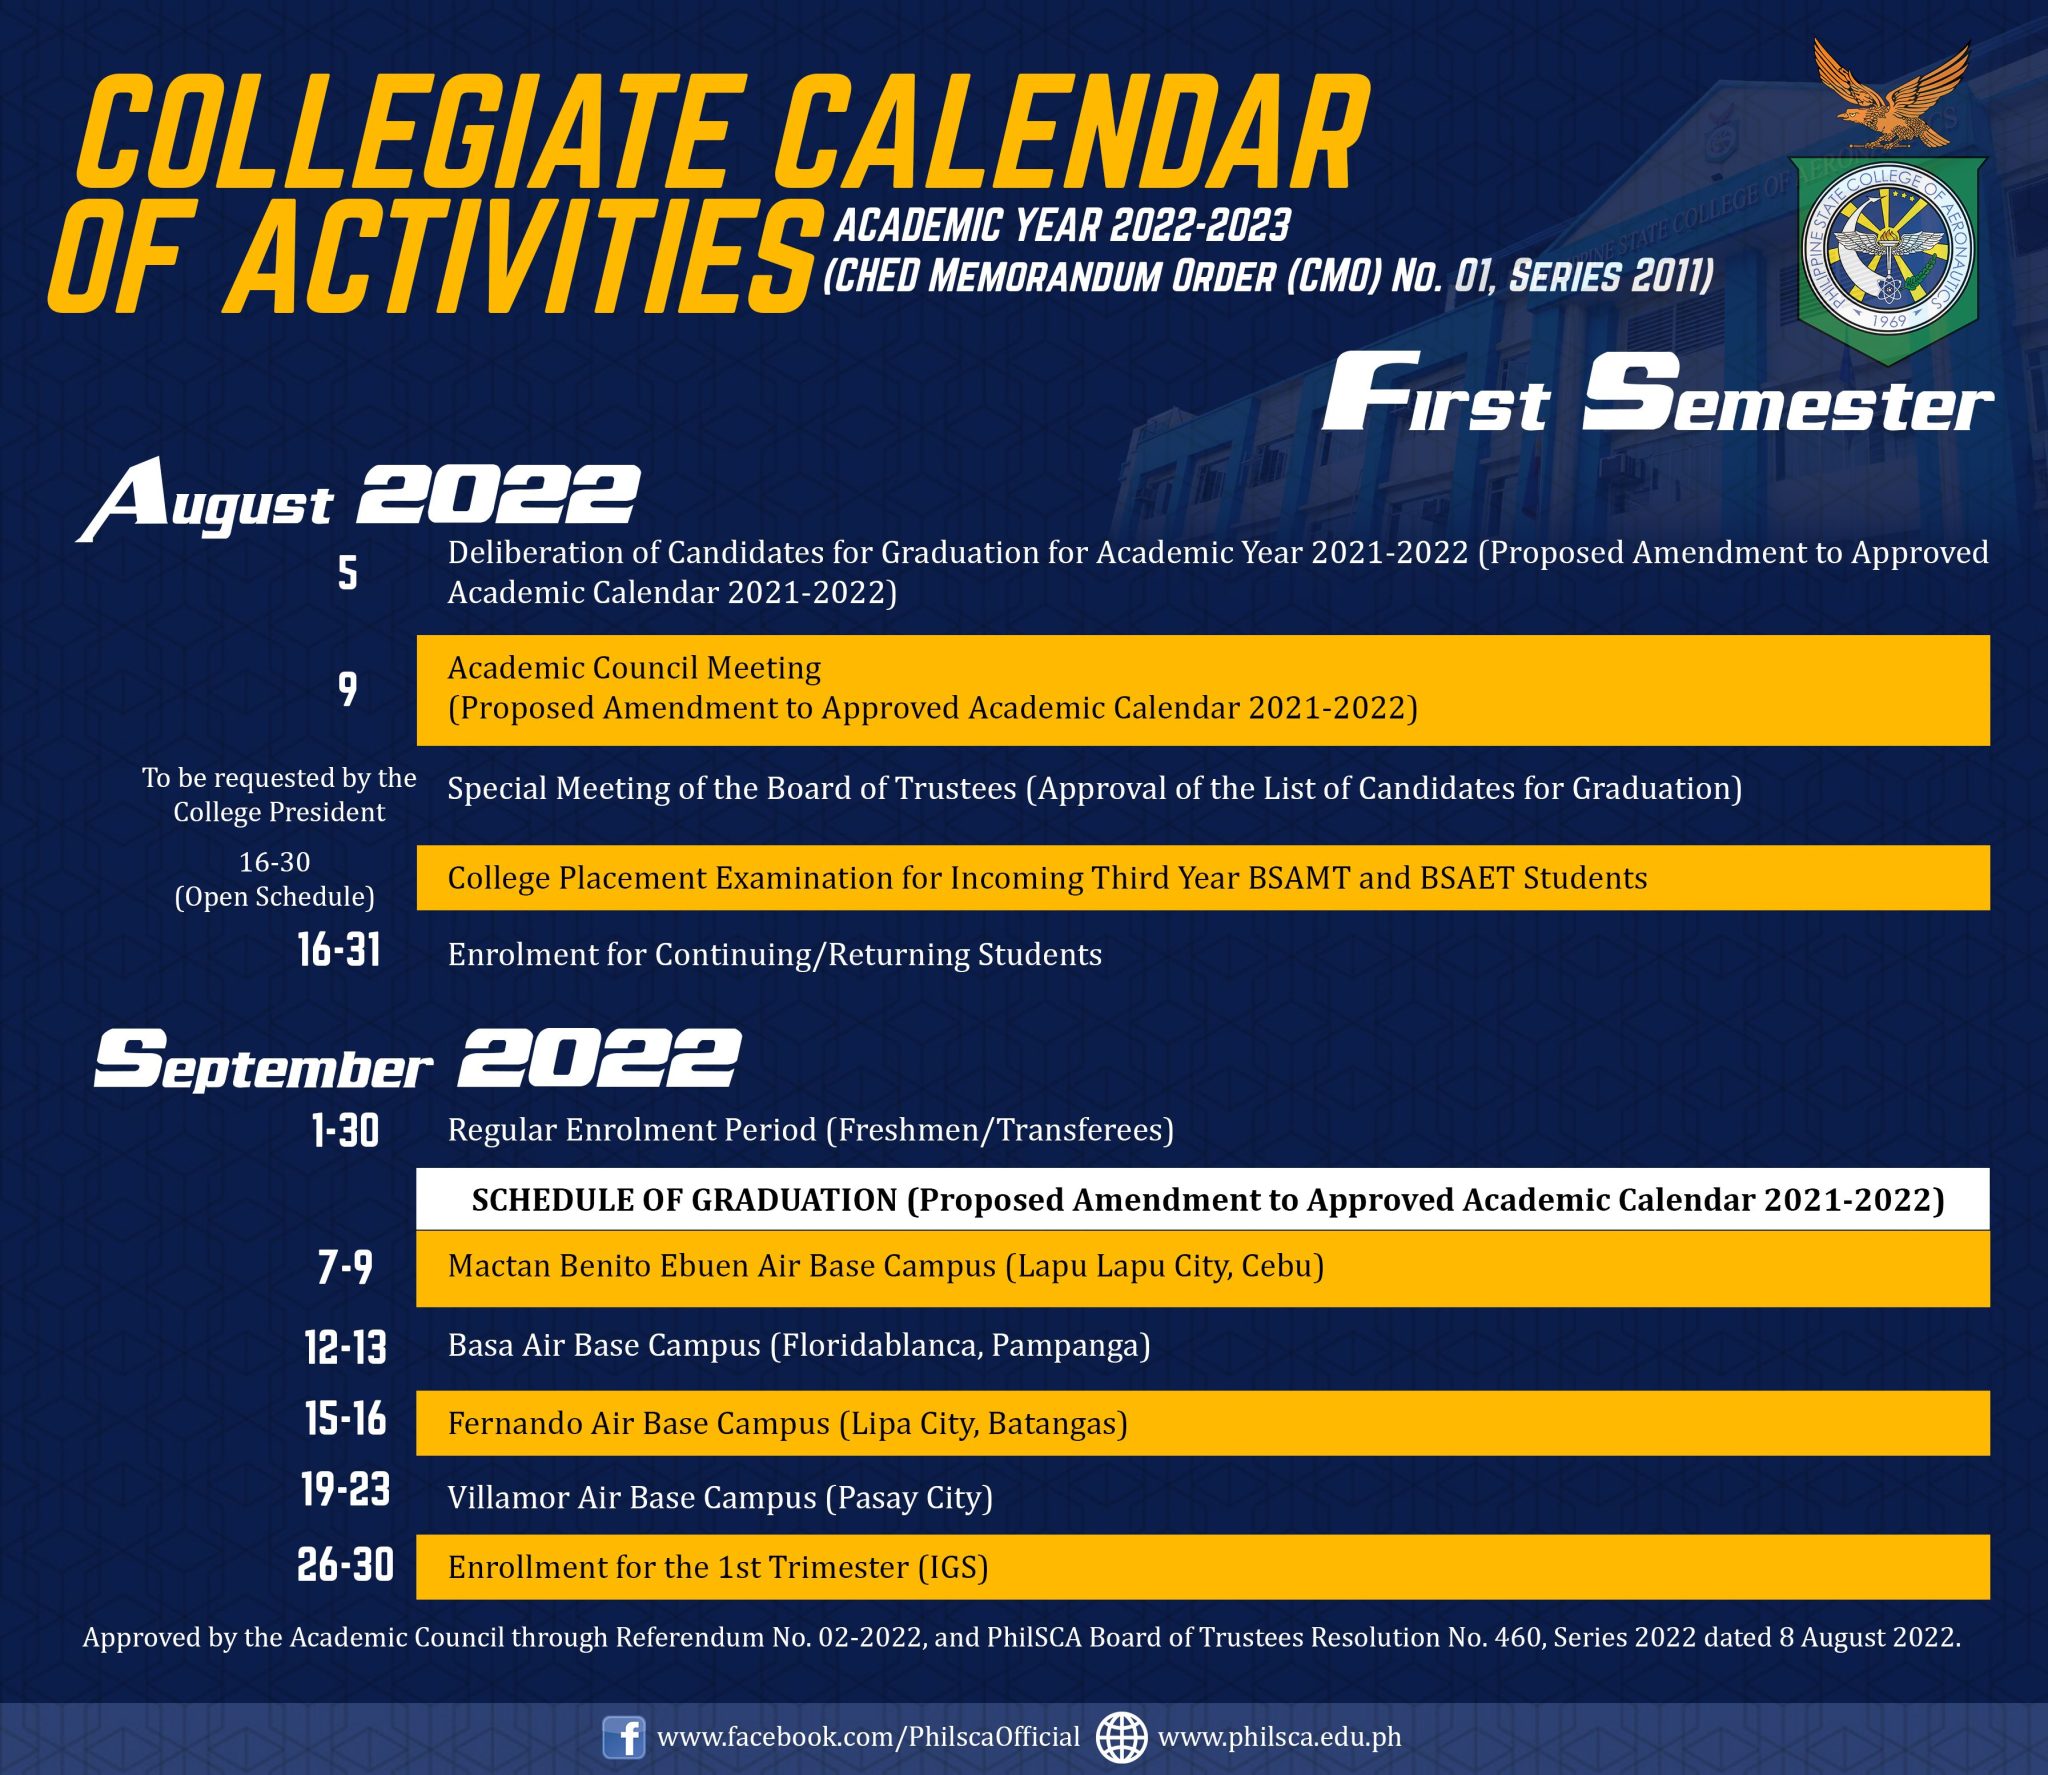 Collegiate Calendar of Activities for Academic Year 20222023.